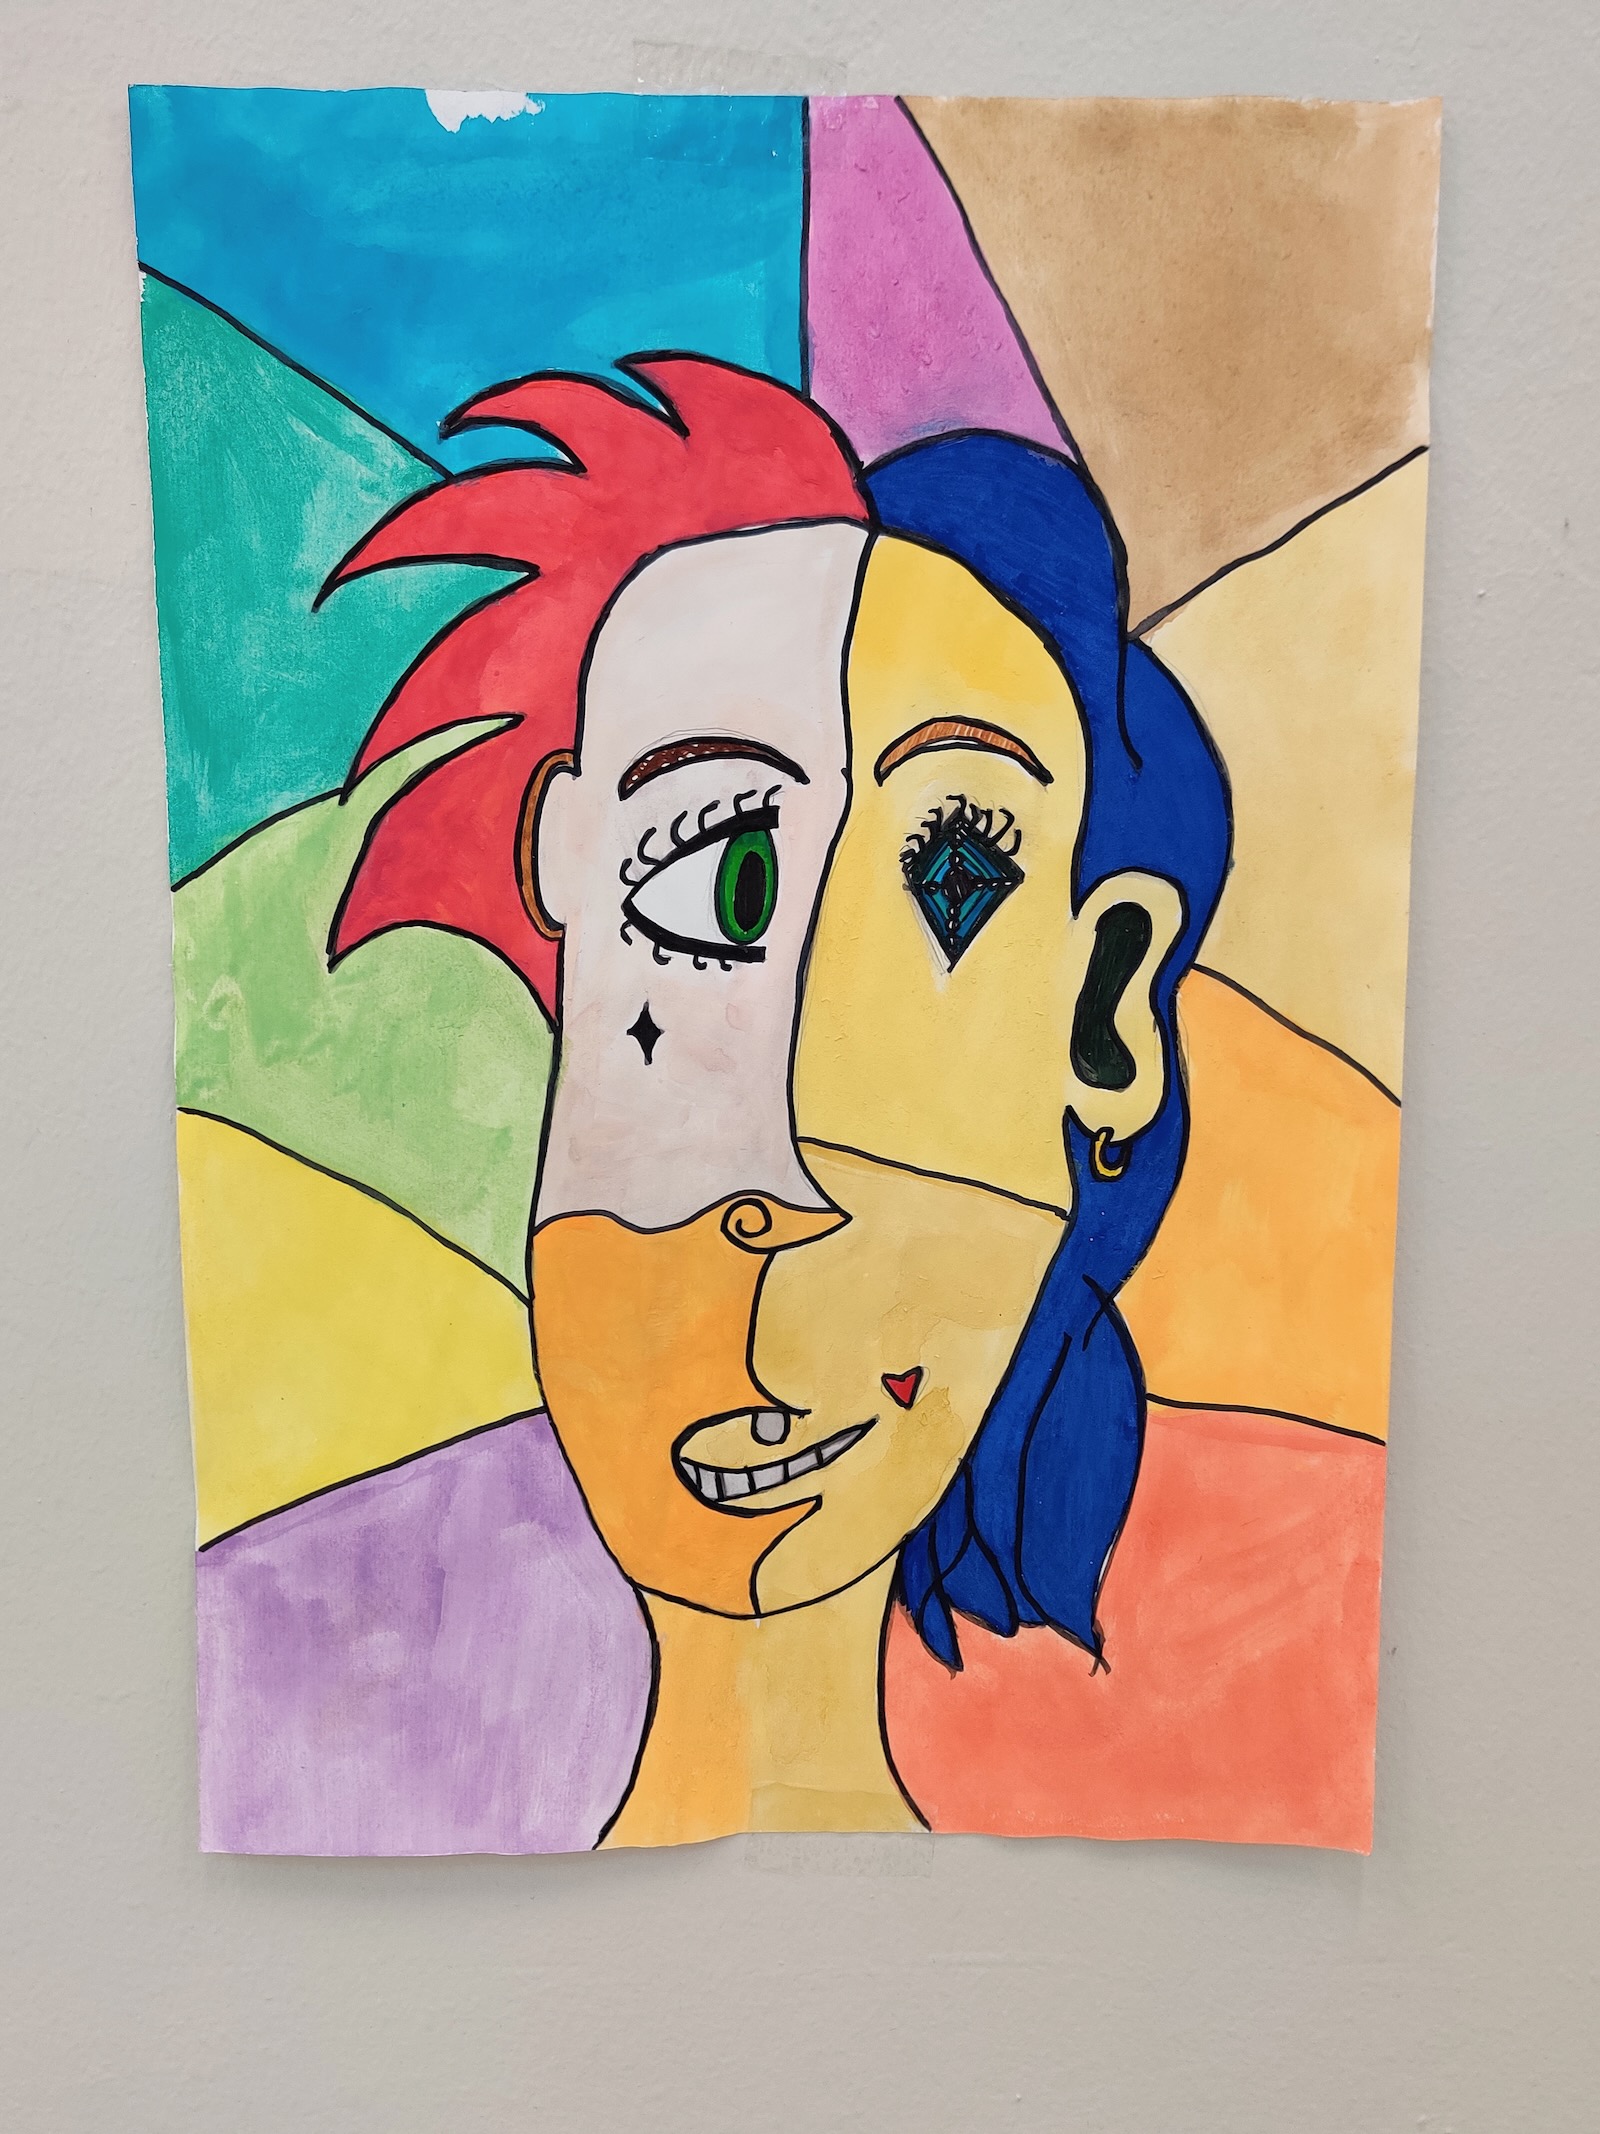 26 Art : Picasso Art ideas  picasso art, elementary art, art